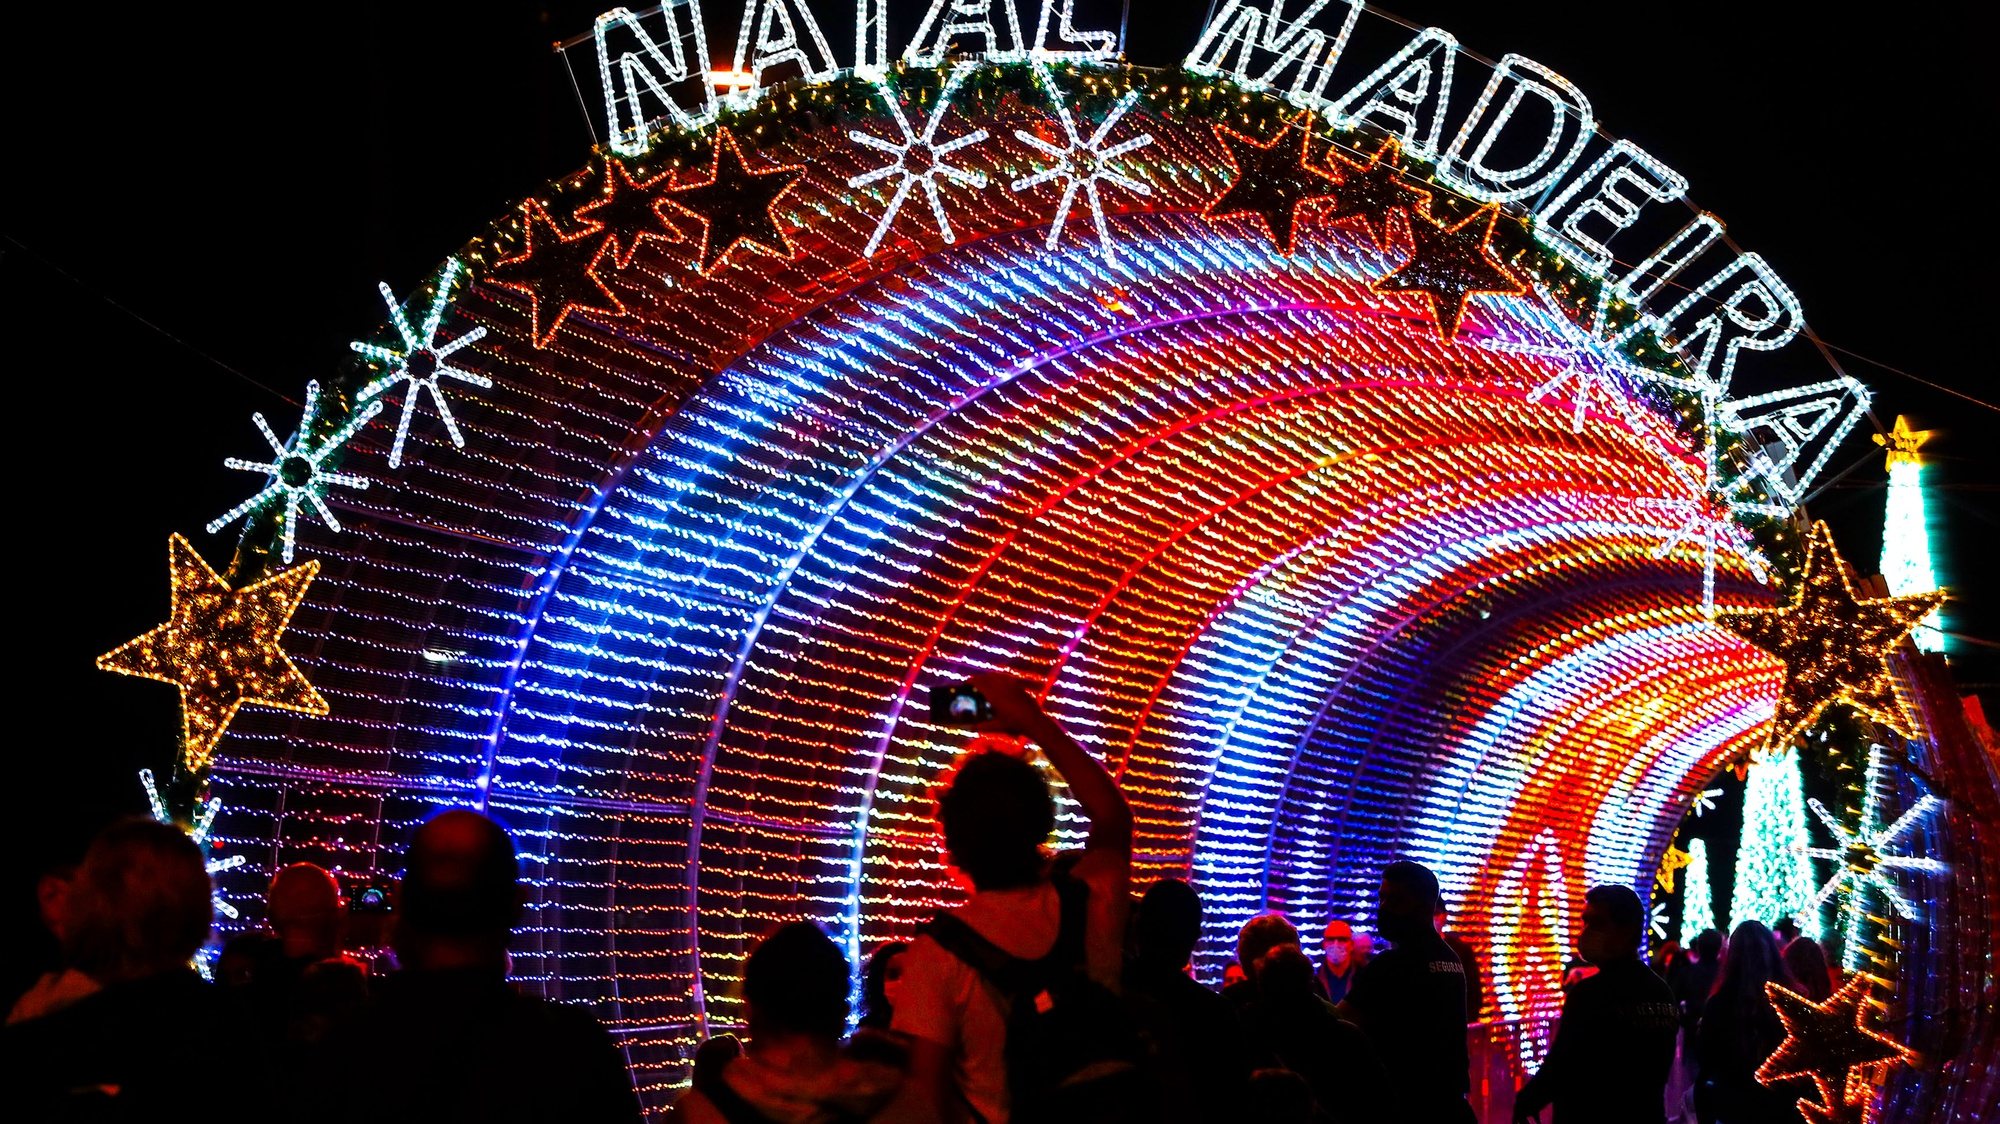 O túnel de luz instalado no cais do Funchal e programado para produzir espetáculos de música e efeitos visuais, é a grande atração das iluminações de Natal este ano na capital madeirense, atraindo todos os dias milhares de pessoas, Funchal, 9 de dezembro de 2020. As iluminações da quadra festiva no centro e arredores do Funchal foram ligadas a 01 de dezembro e vão colorir as noites até 11 de janeiro de 2021, mantendo viva a tradição, apesar da pandemia de covid-19. HOMEM DE GOUVEIA/LUSA